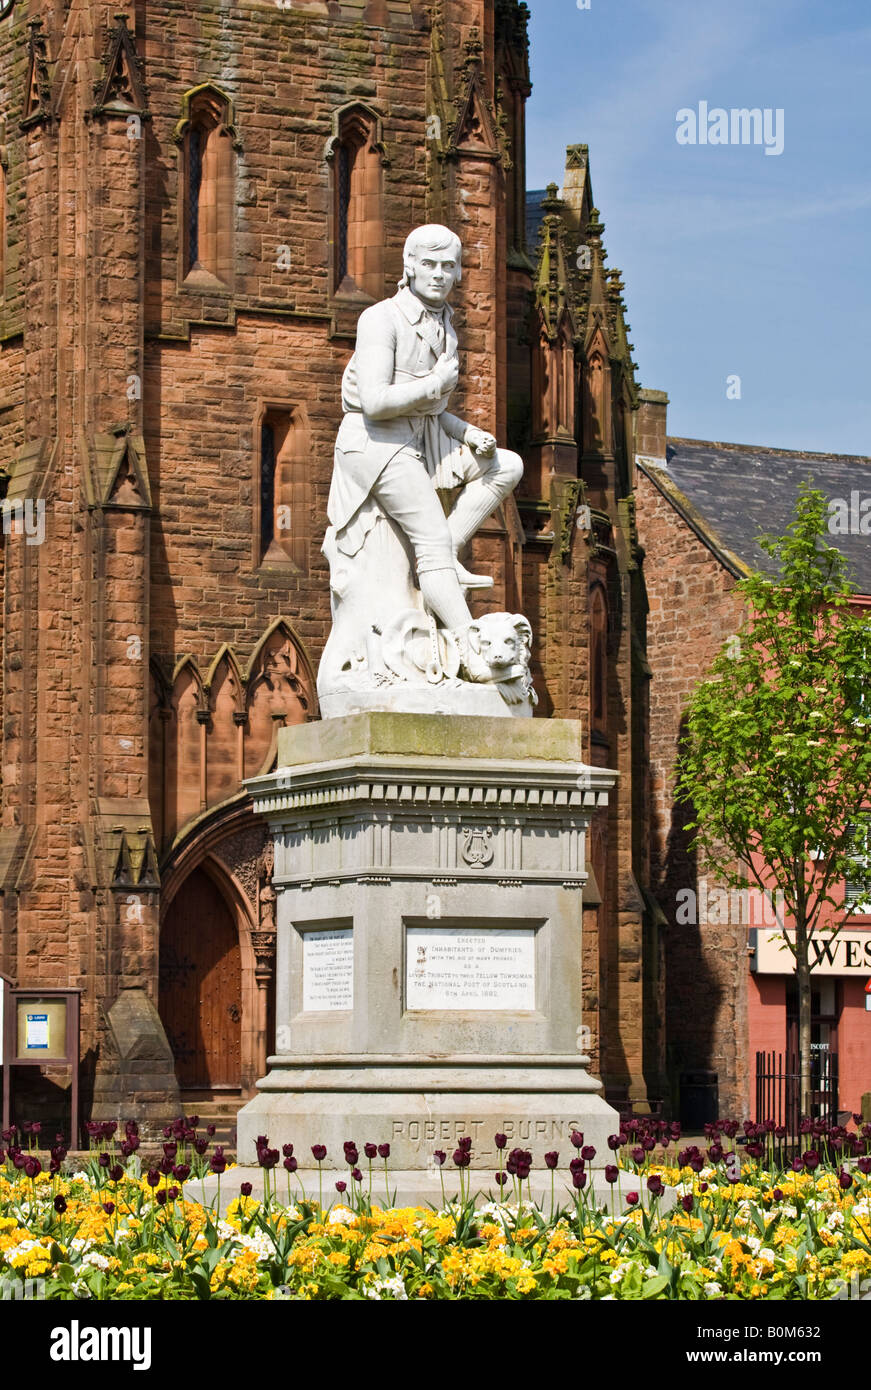 Amelia Paton Hill's estatua de Robert Burns, el poeta nacional de Escocia de 1759 - 1796, Dumfries, Dumfries y Galloway, Escocia. Foto de stock